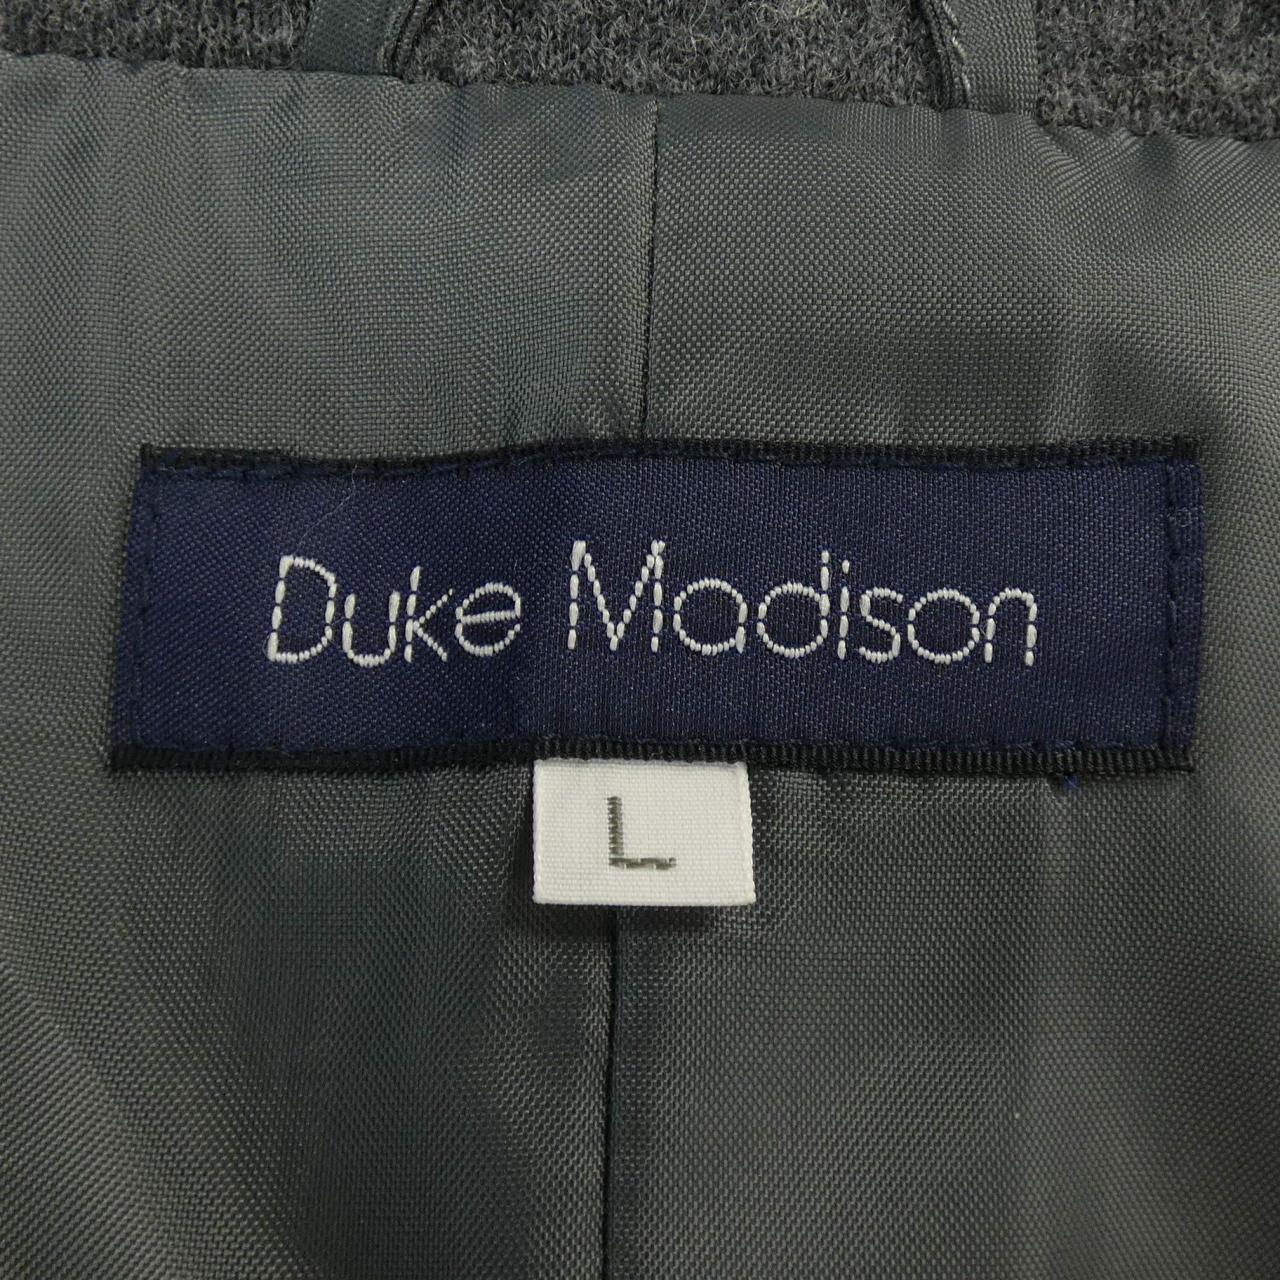 DUKEMADISON coat